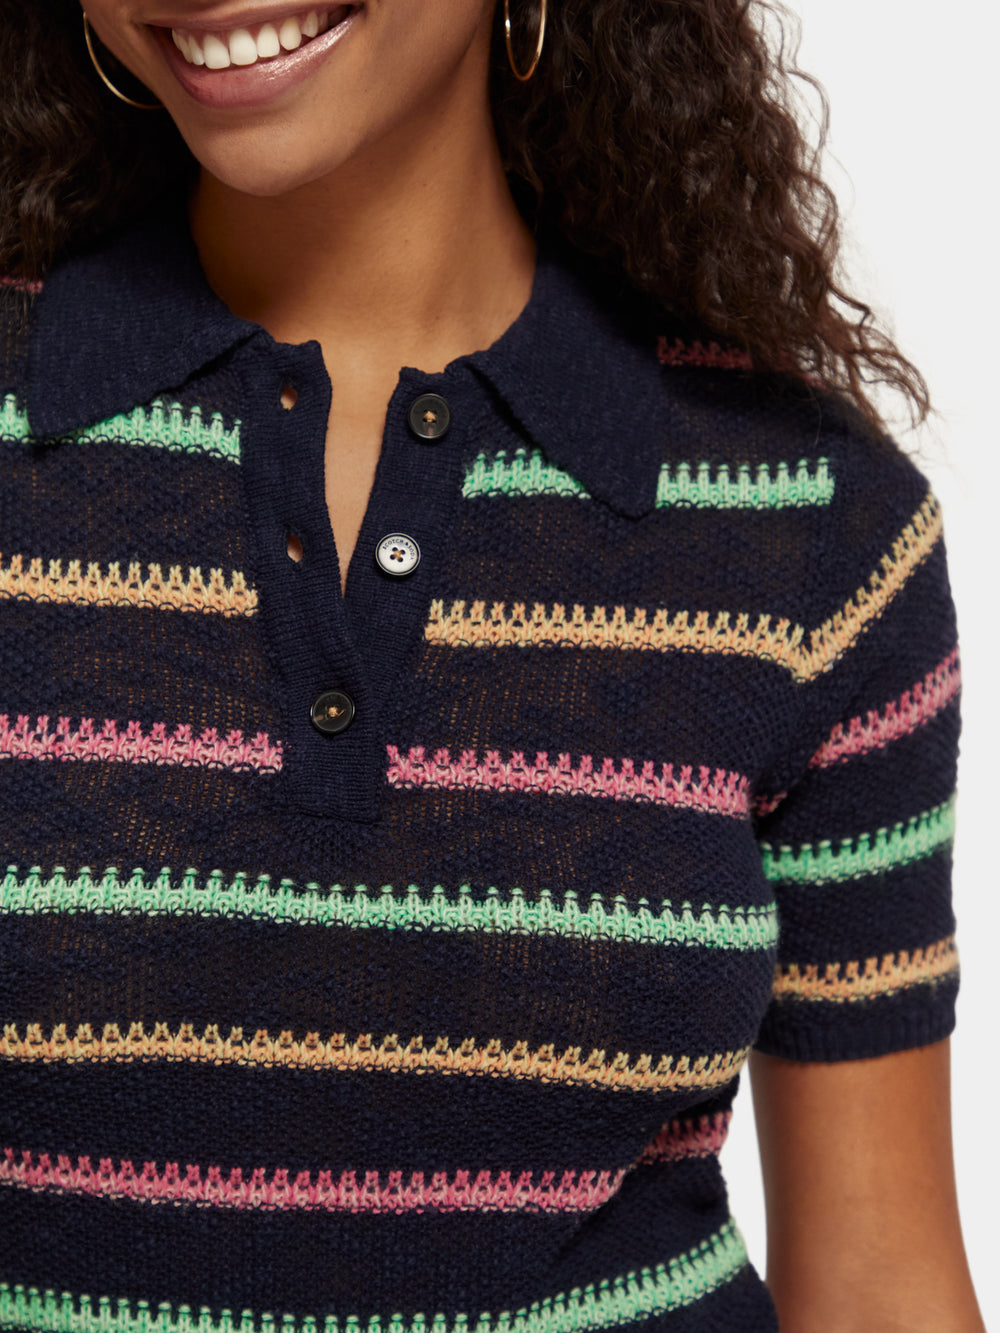 Stripe collared knitted pullover - Scotch & Soda AU